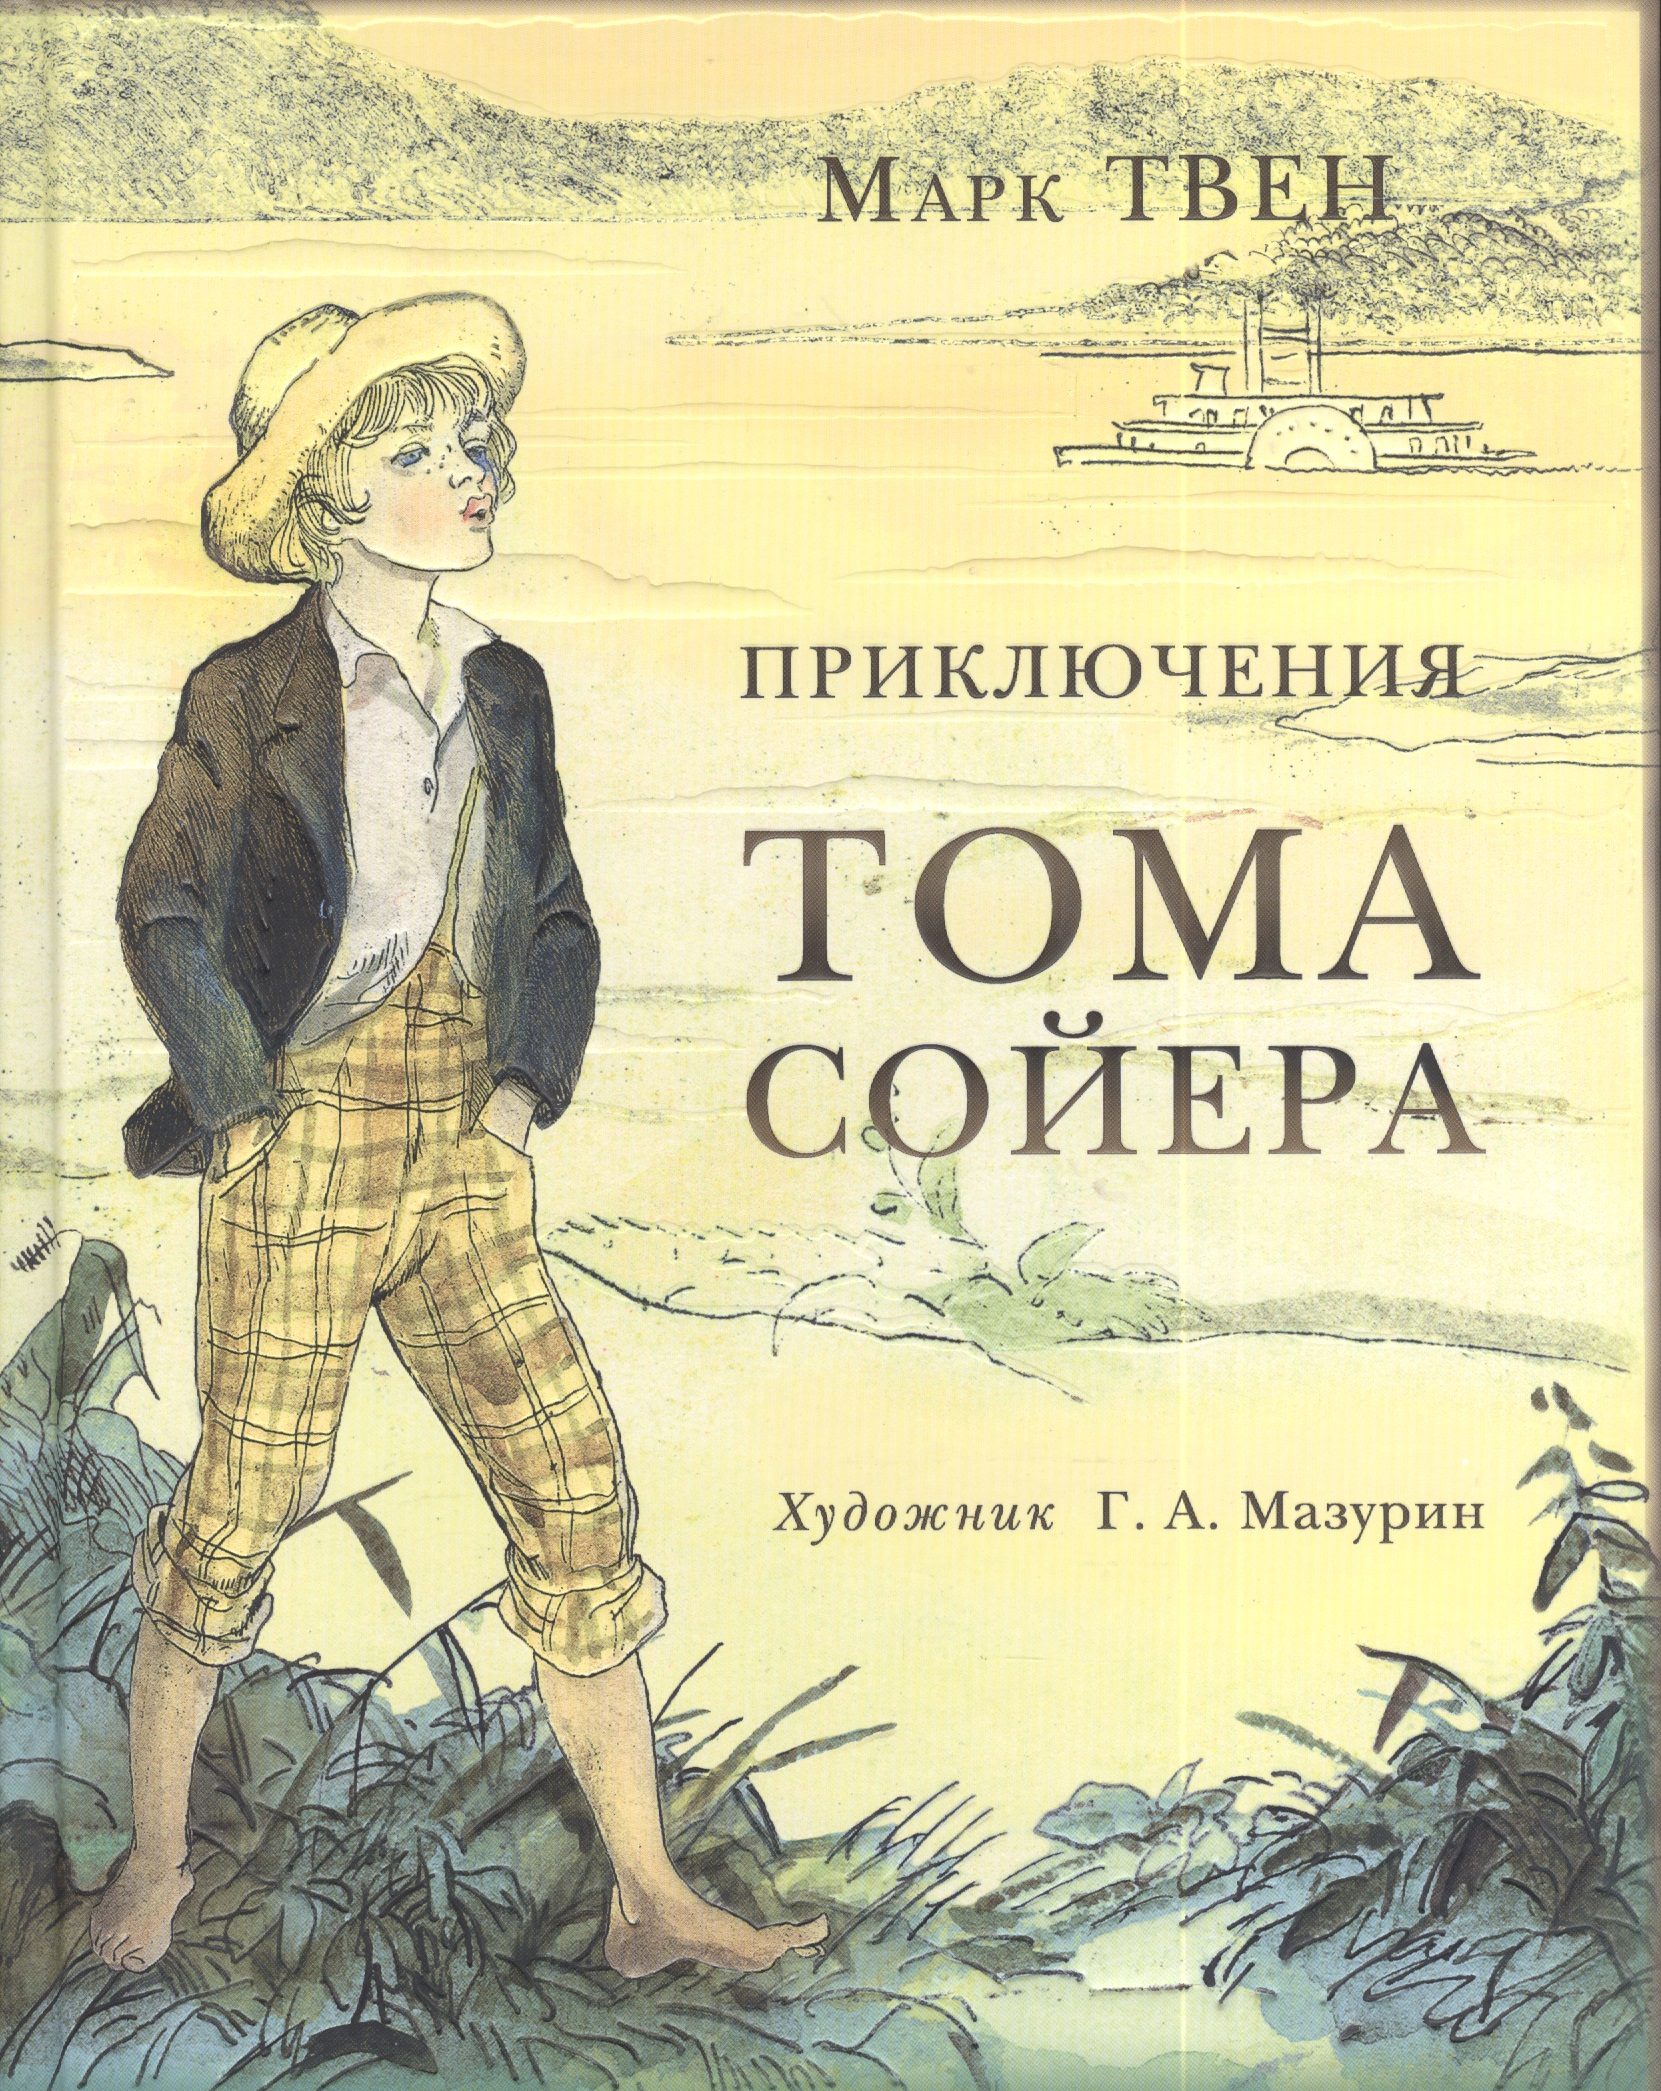 Чтение приключения тома сойера. Приключения Тома Сойера. 3 М Твен приключения Тома Сойера.